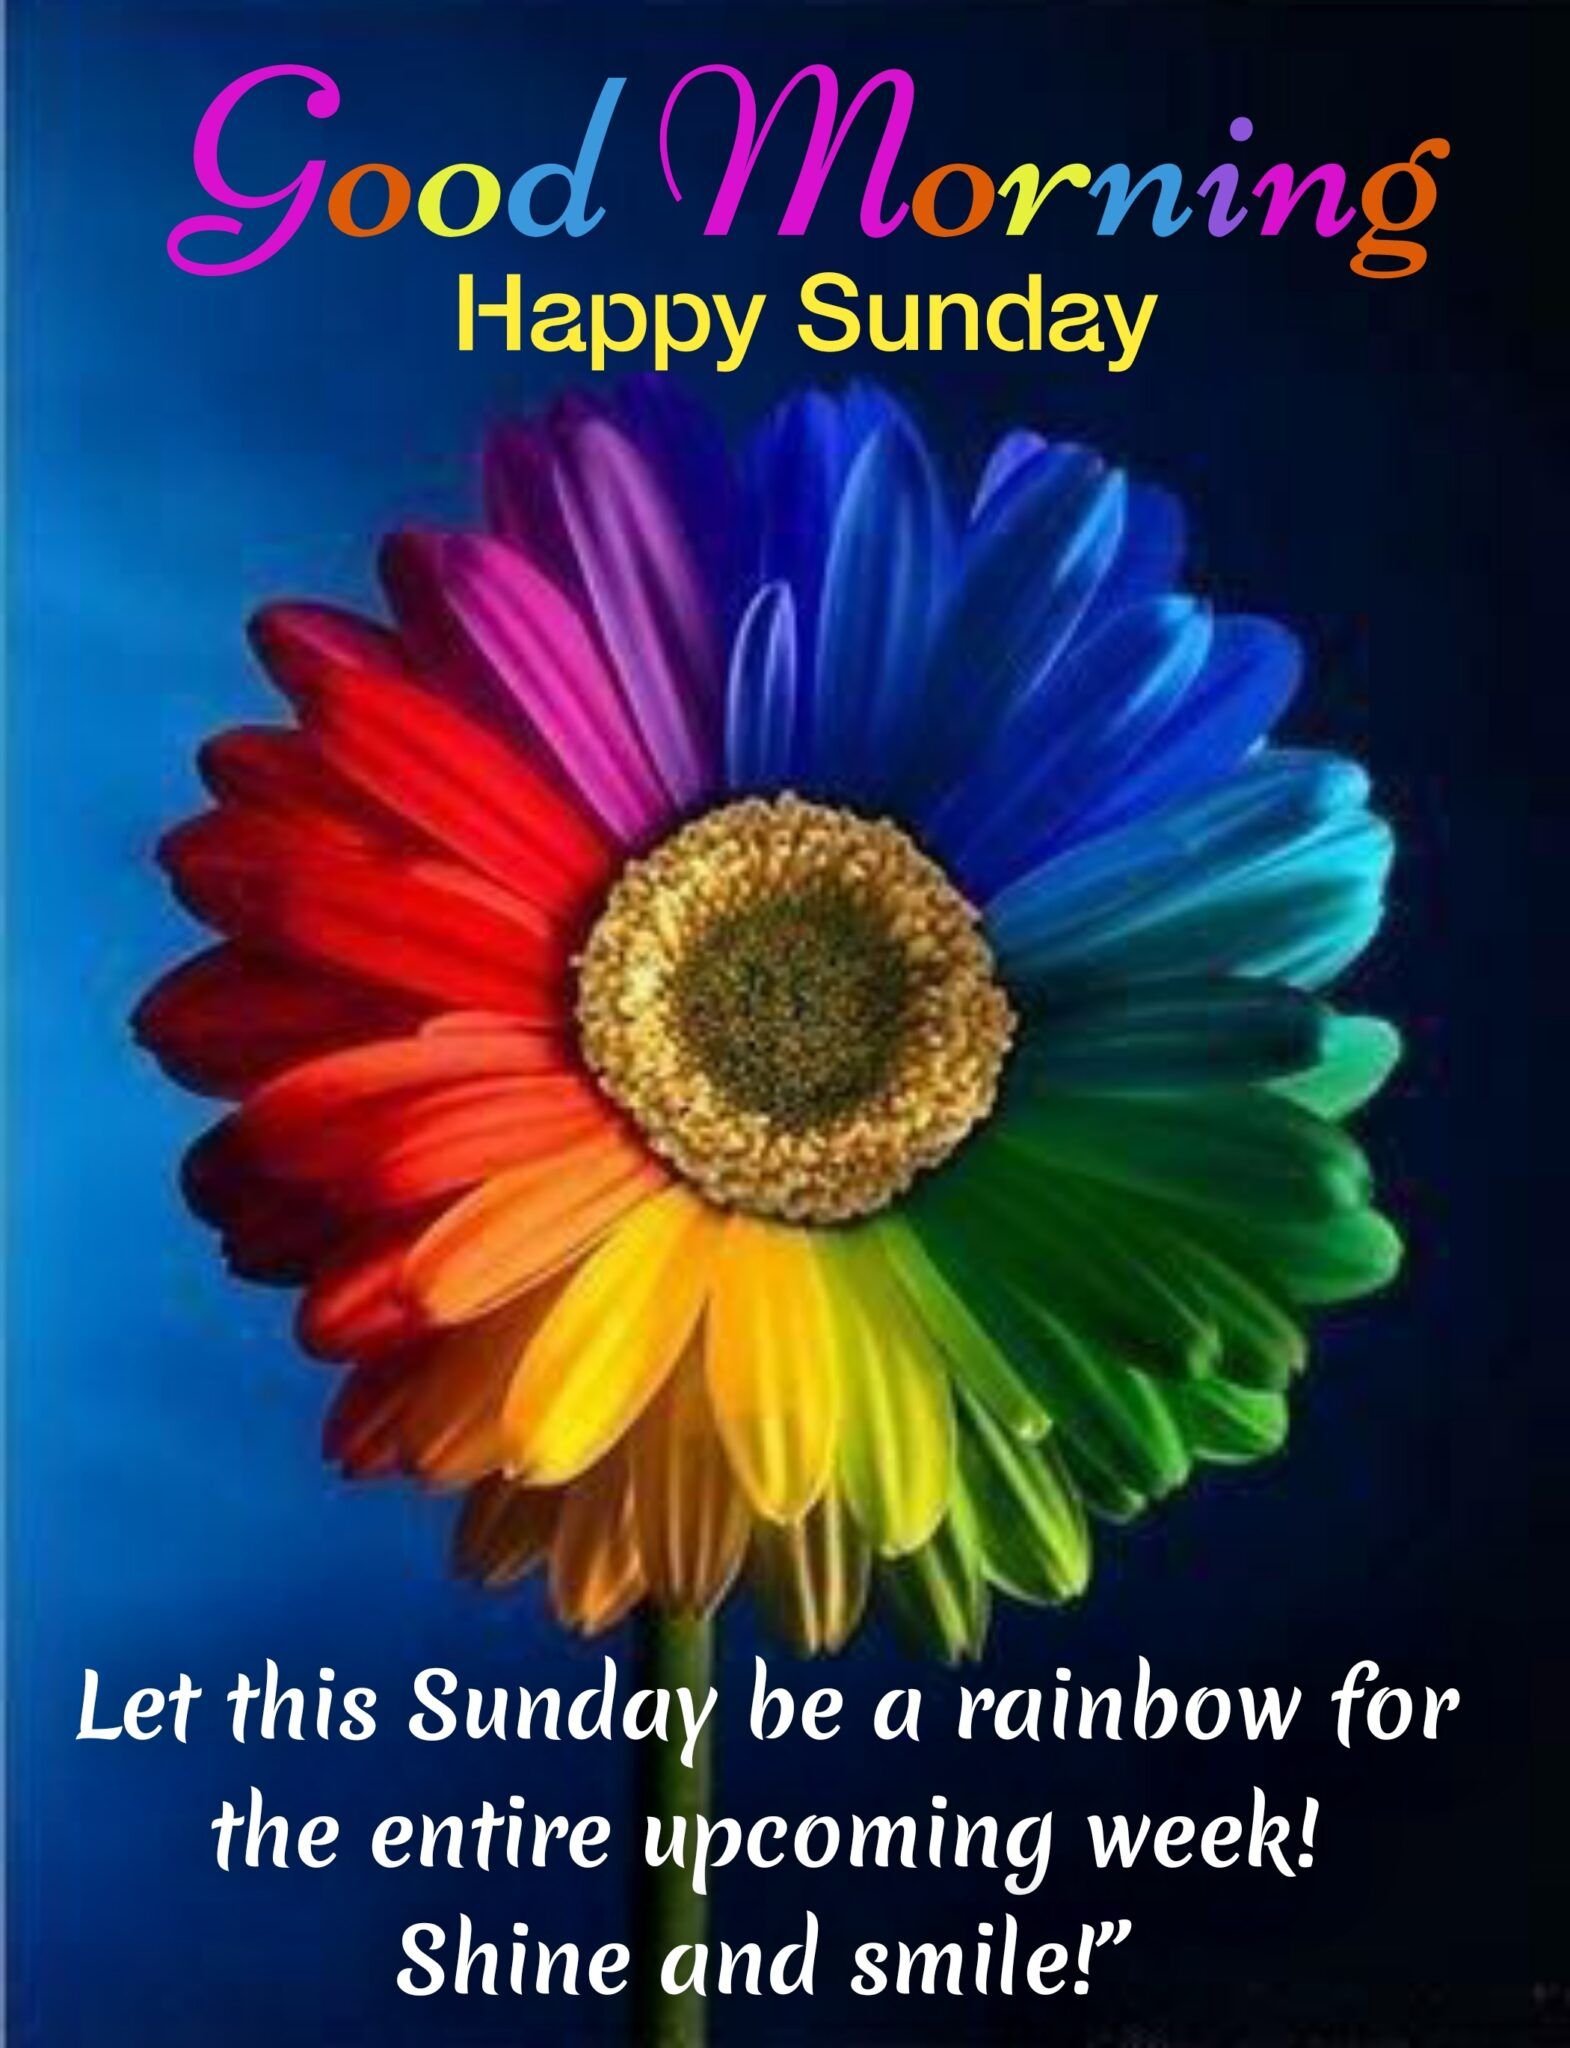 Good Morning Happy Sunday Wishes Blissful Symbol